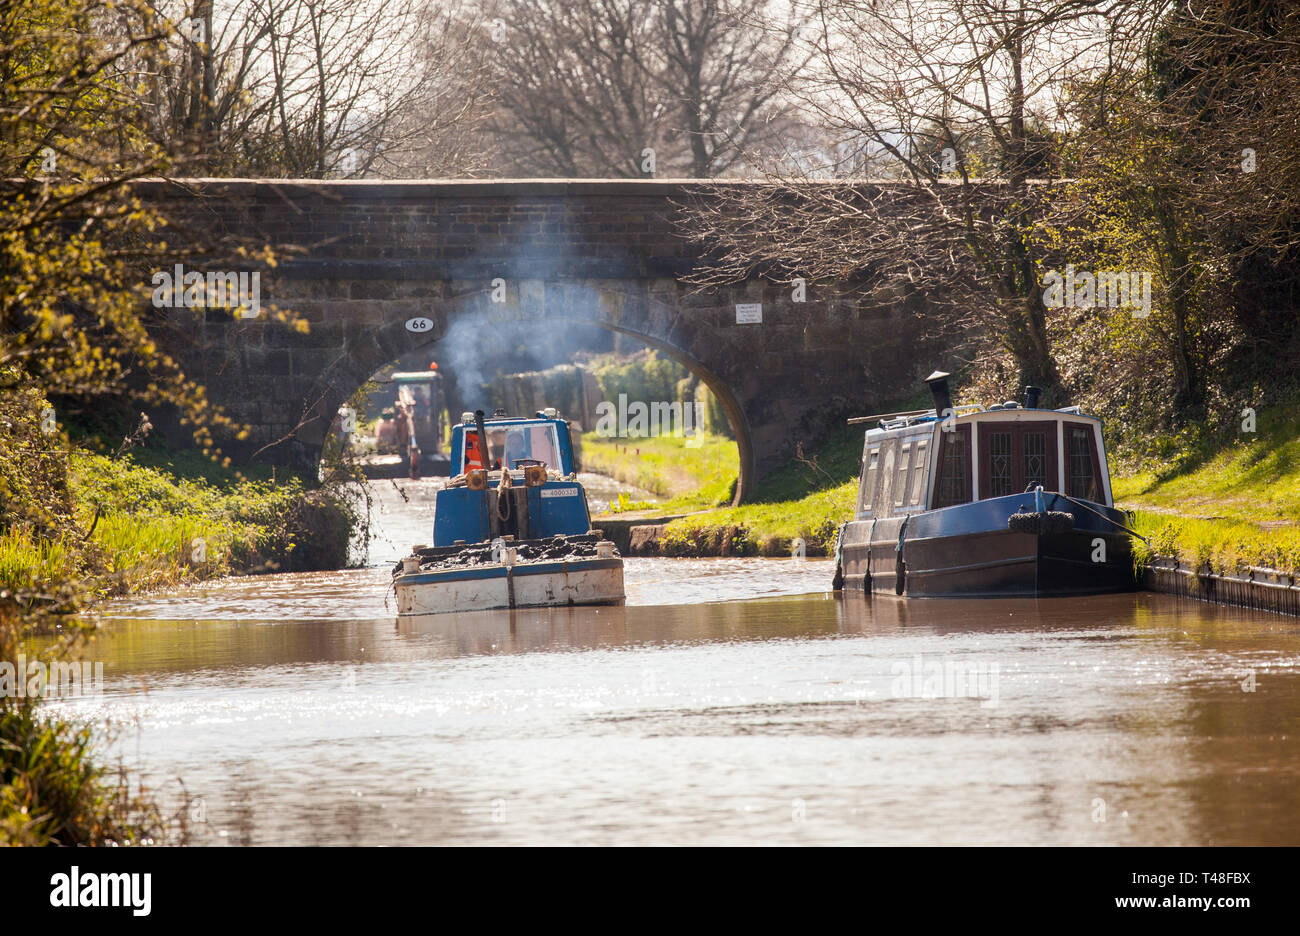 El trabajo de reparación y mantenimiento de dragado del canal de Macclesfield está llevando a cabo en Inglaterra Cheshire Buglawton Foto de stock